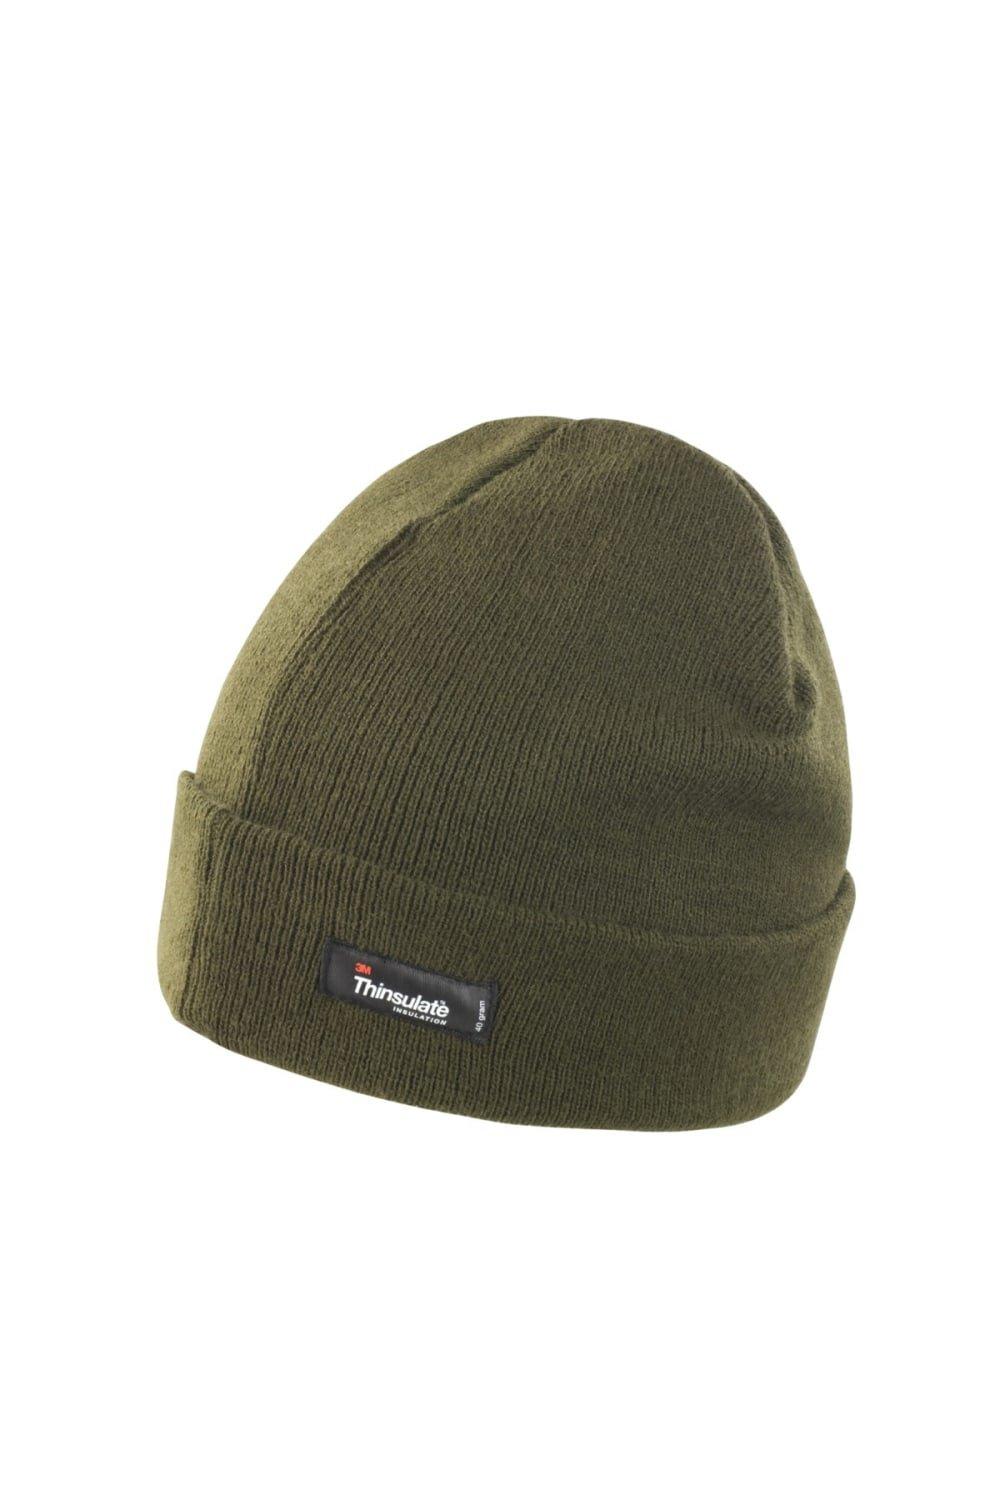 цена Легкая термозимняя шапка Thinsulate (3M, 40 г) Result, зеленый